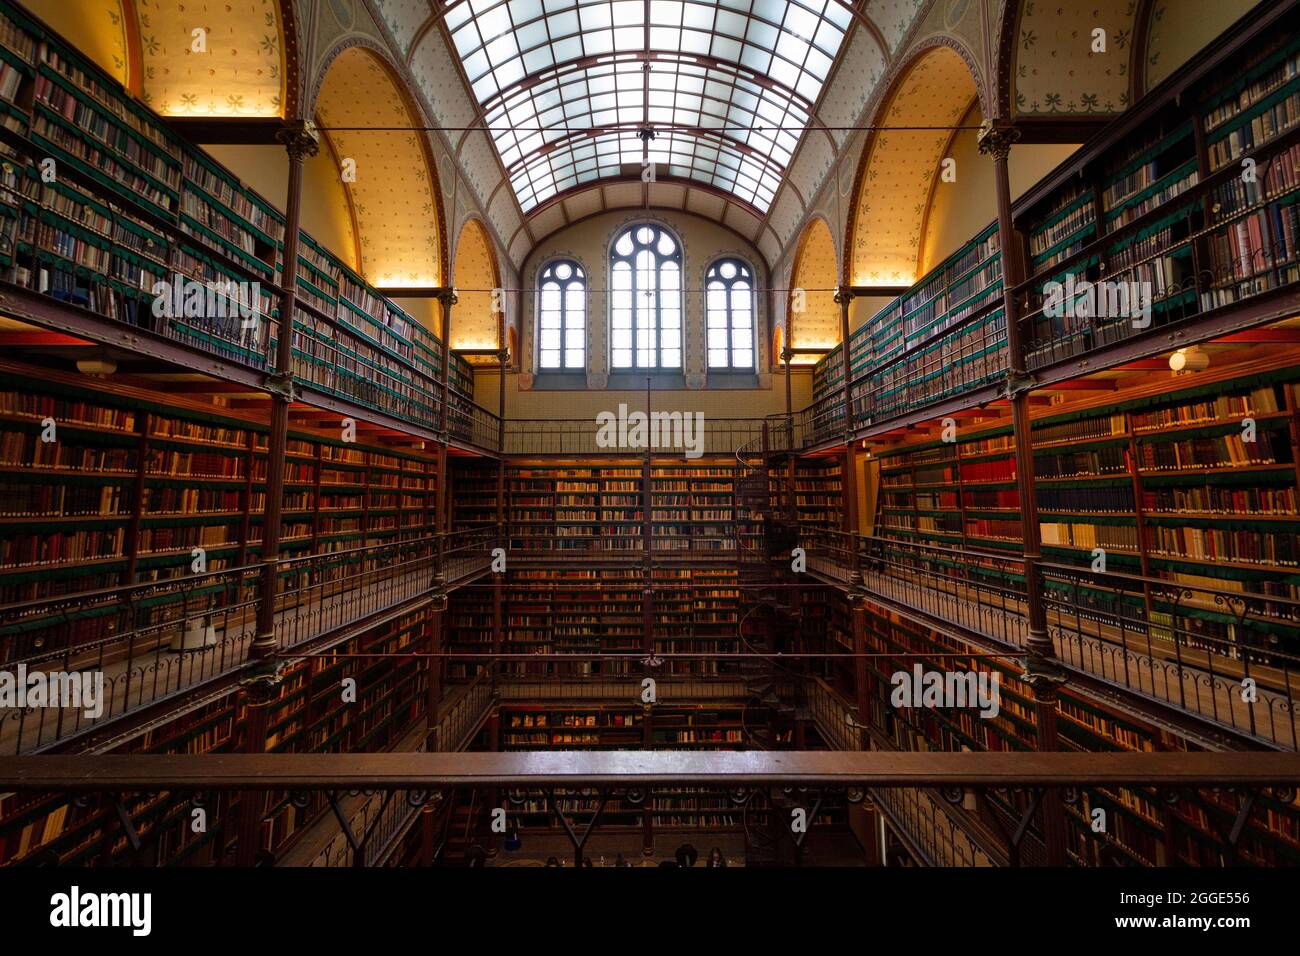 25 janvier 2019, pays-Bas, Amsterdam. La Rijksmuseum Research Library, la plus grande bibliothèque publique de recherche en histoire de l'art aux pays-Bas Banque D'Images